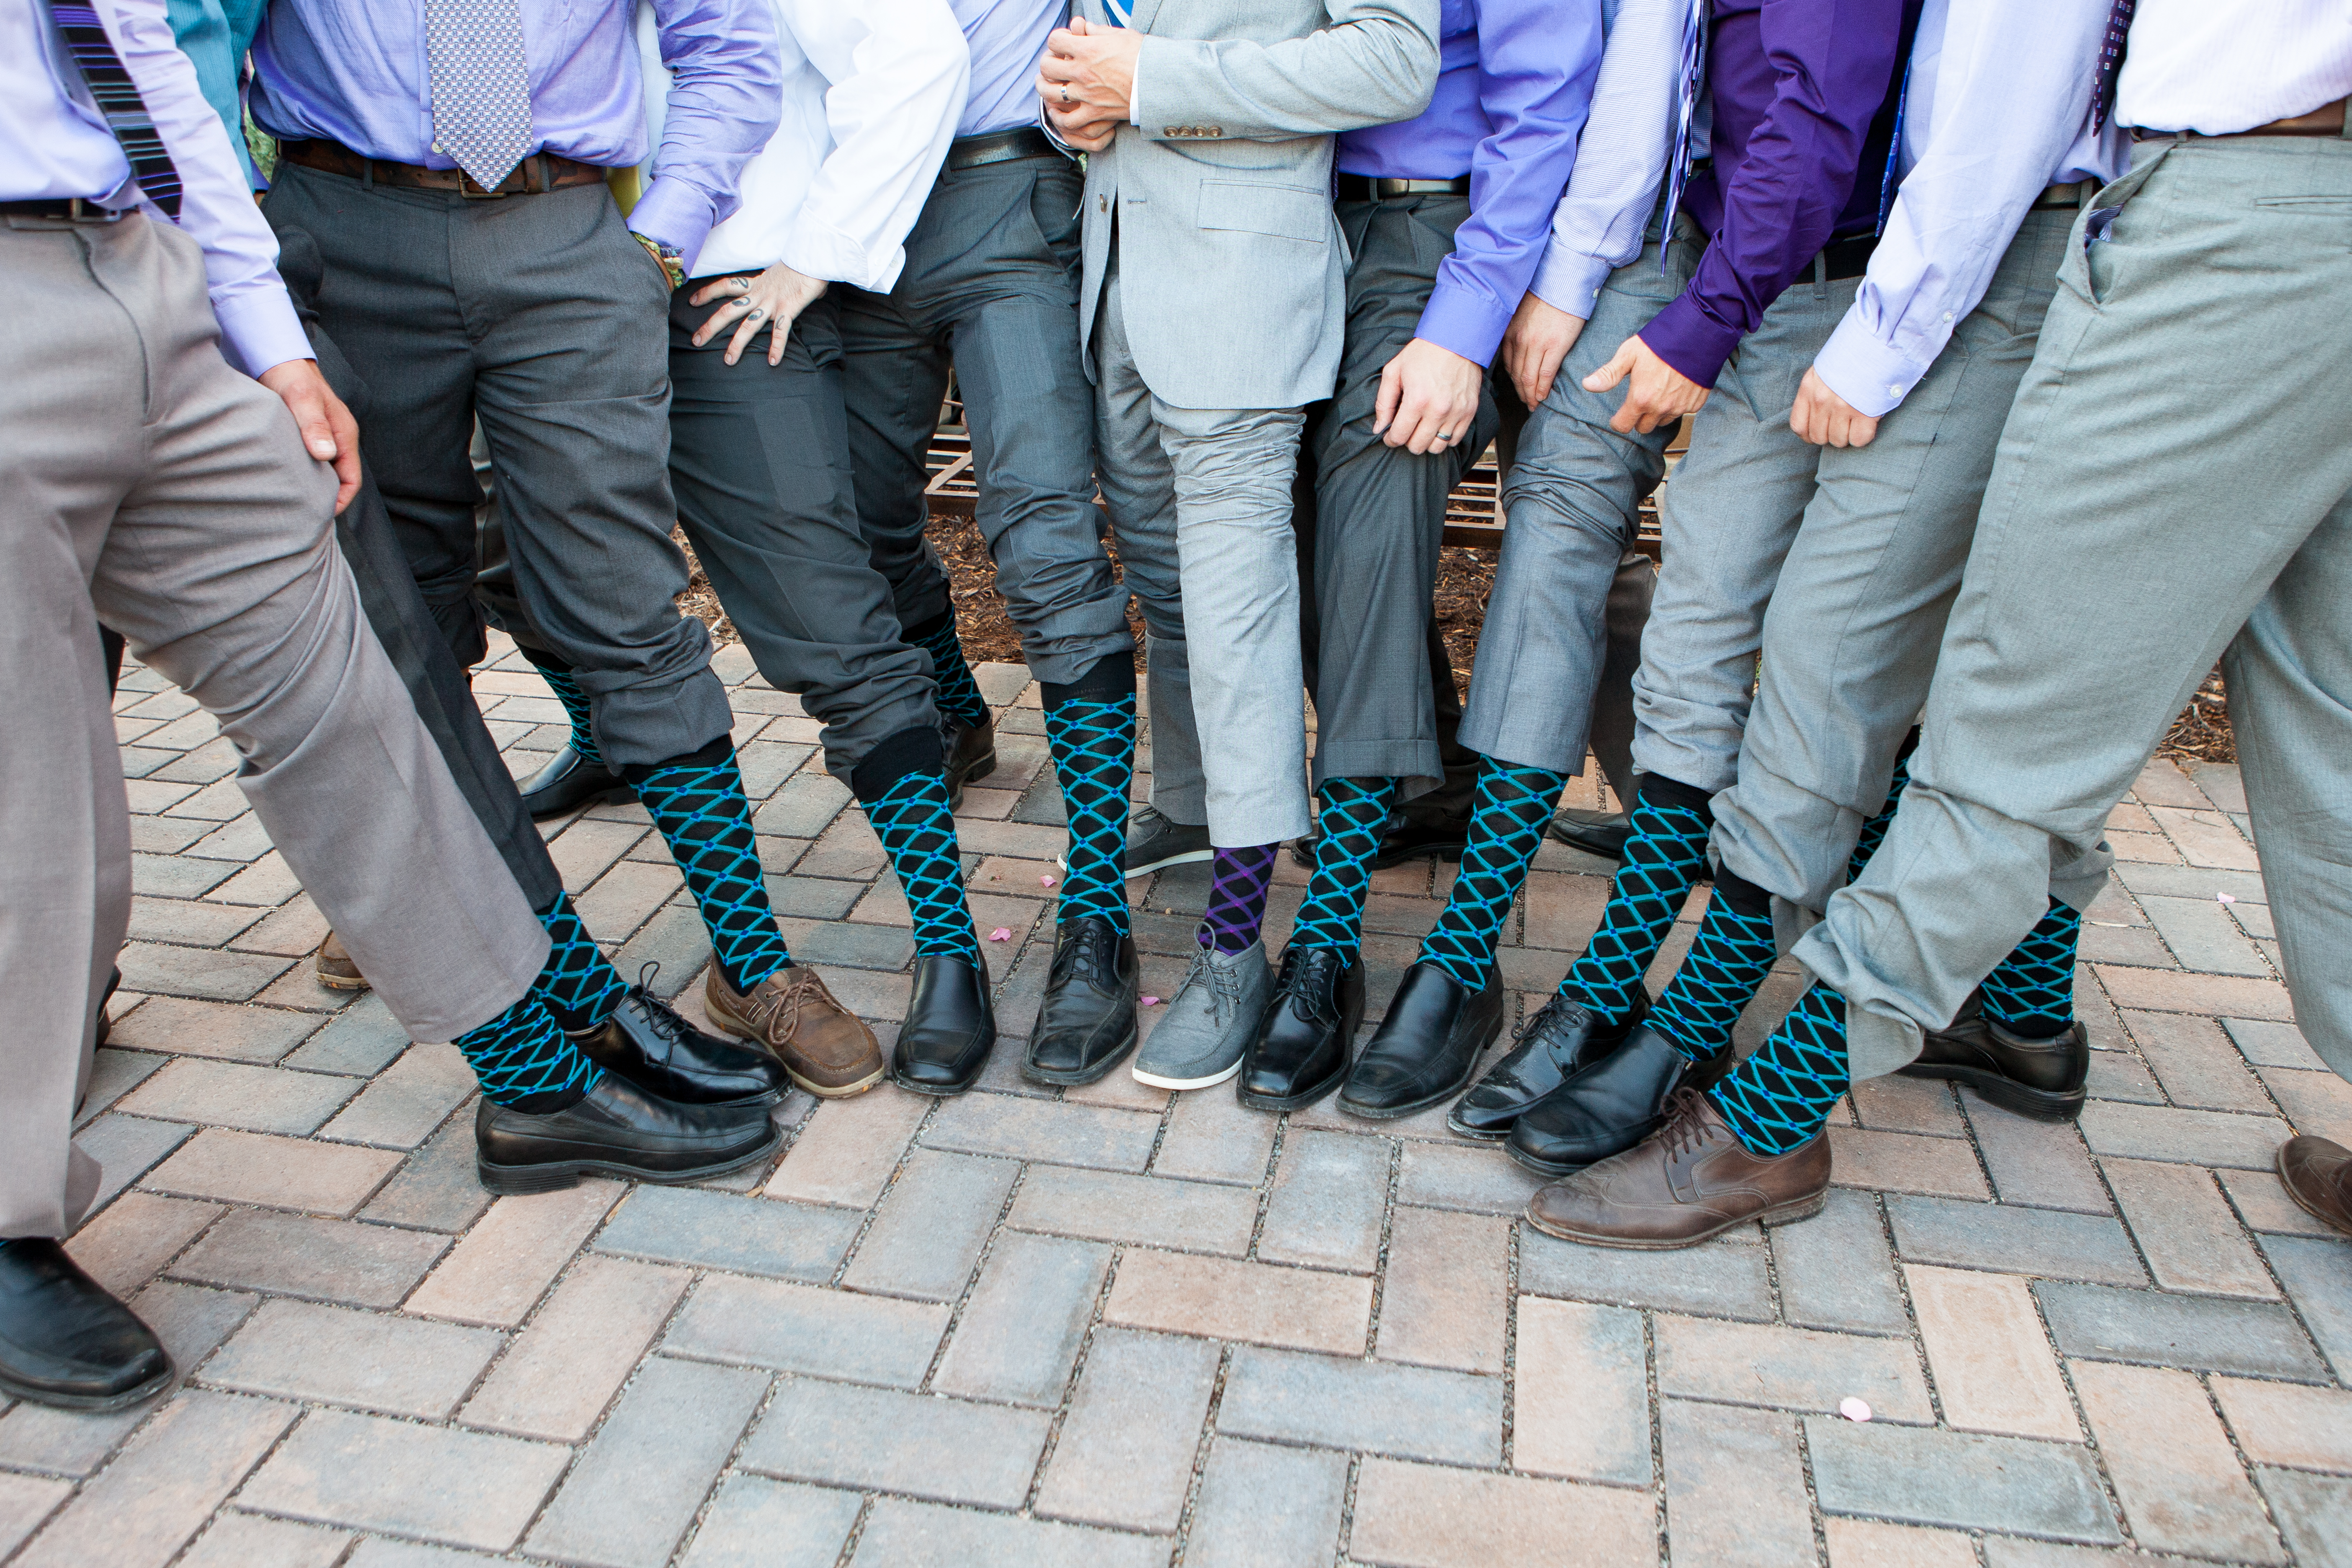 Wedding gifts for groomsmen, socks